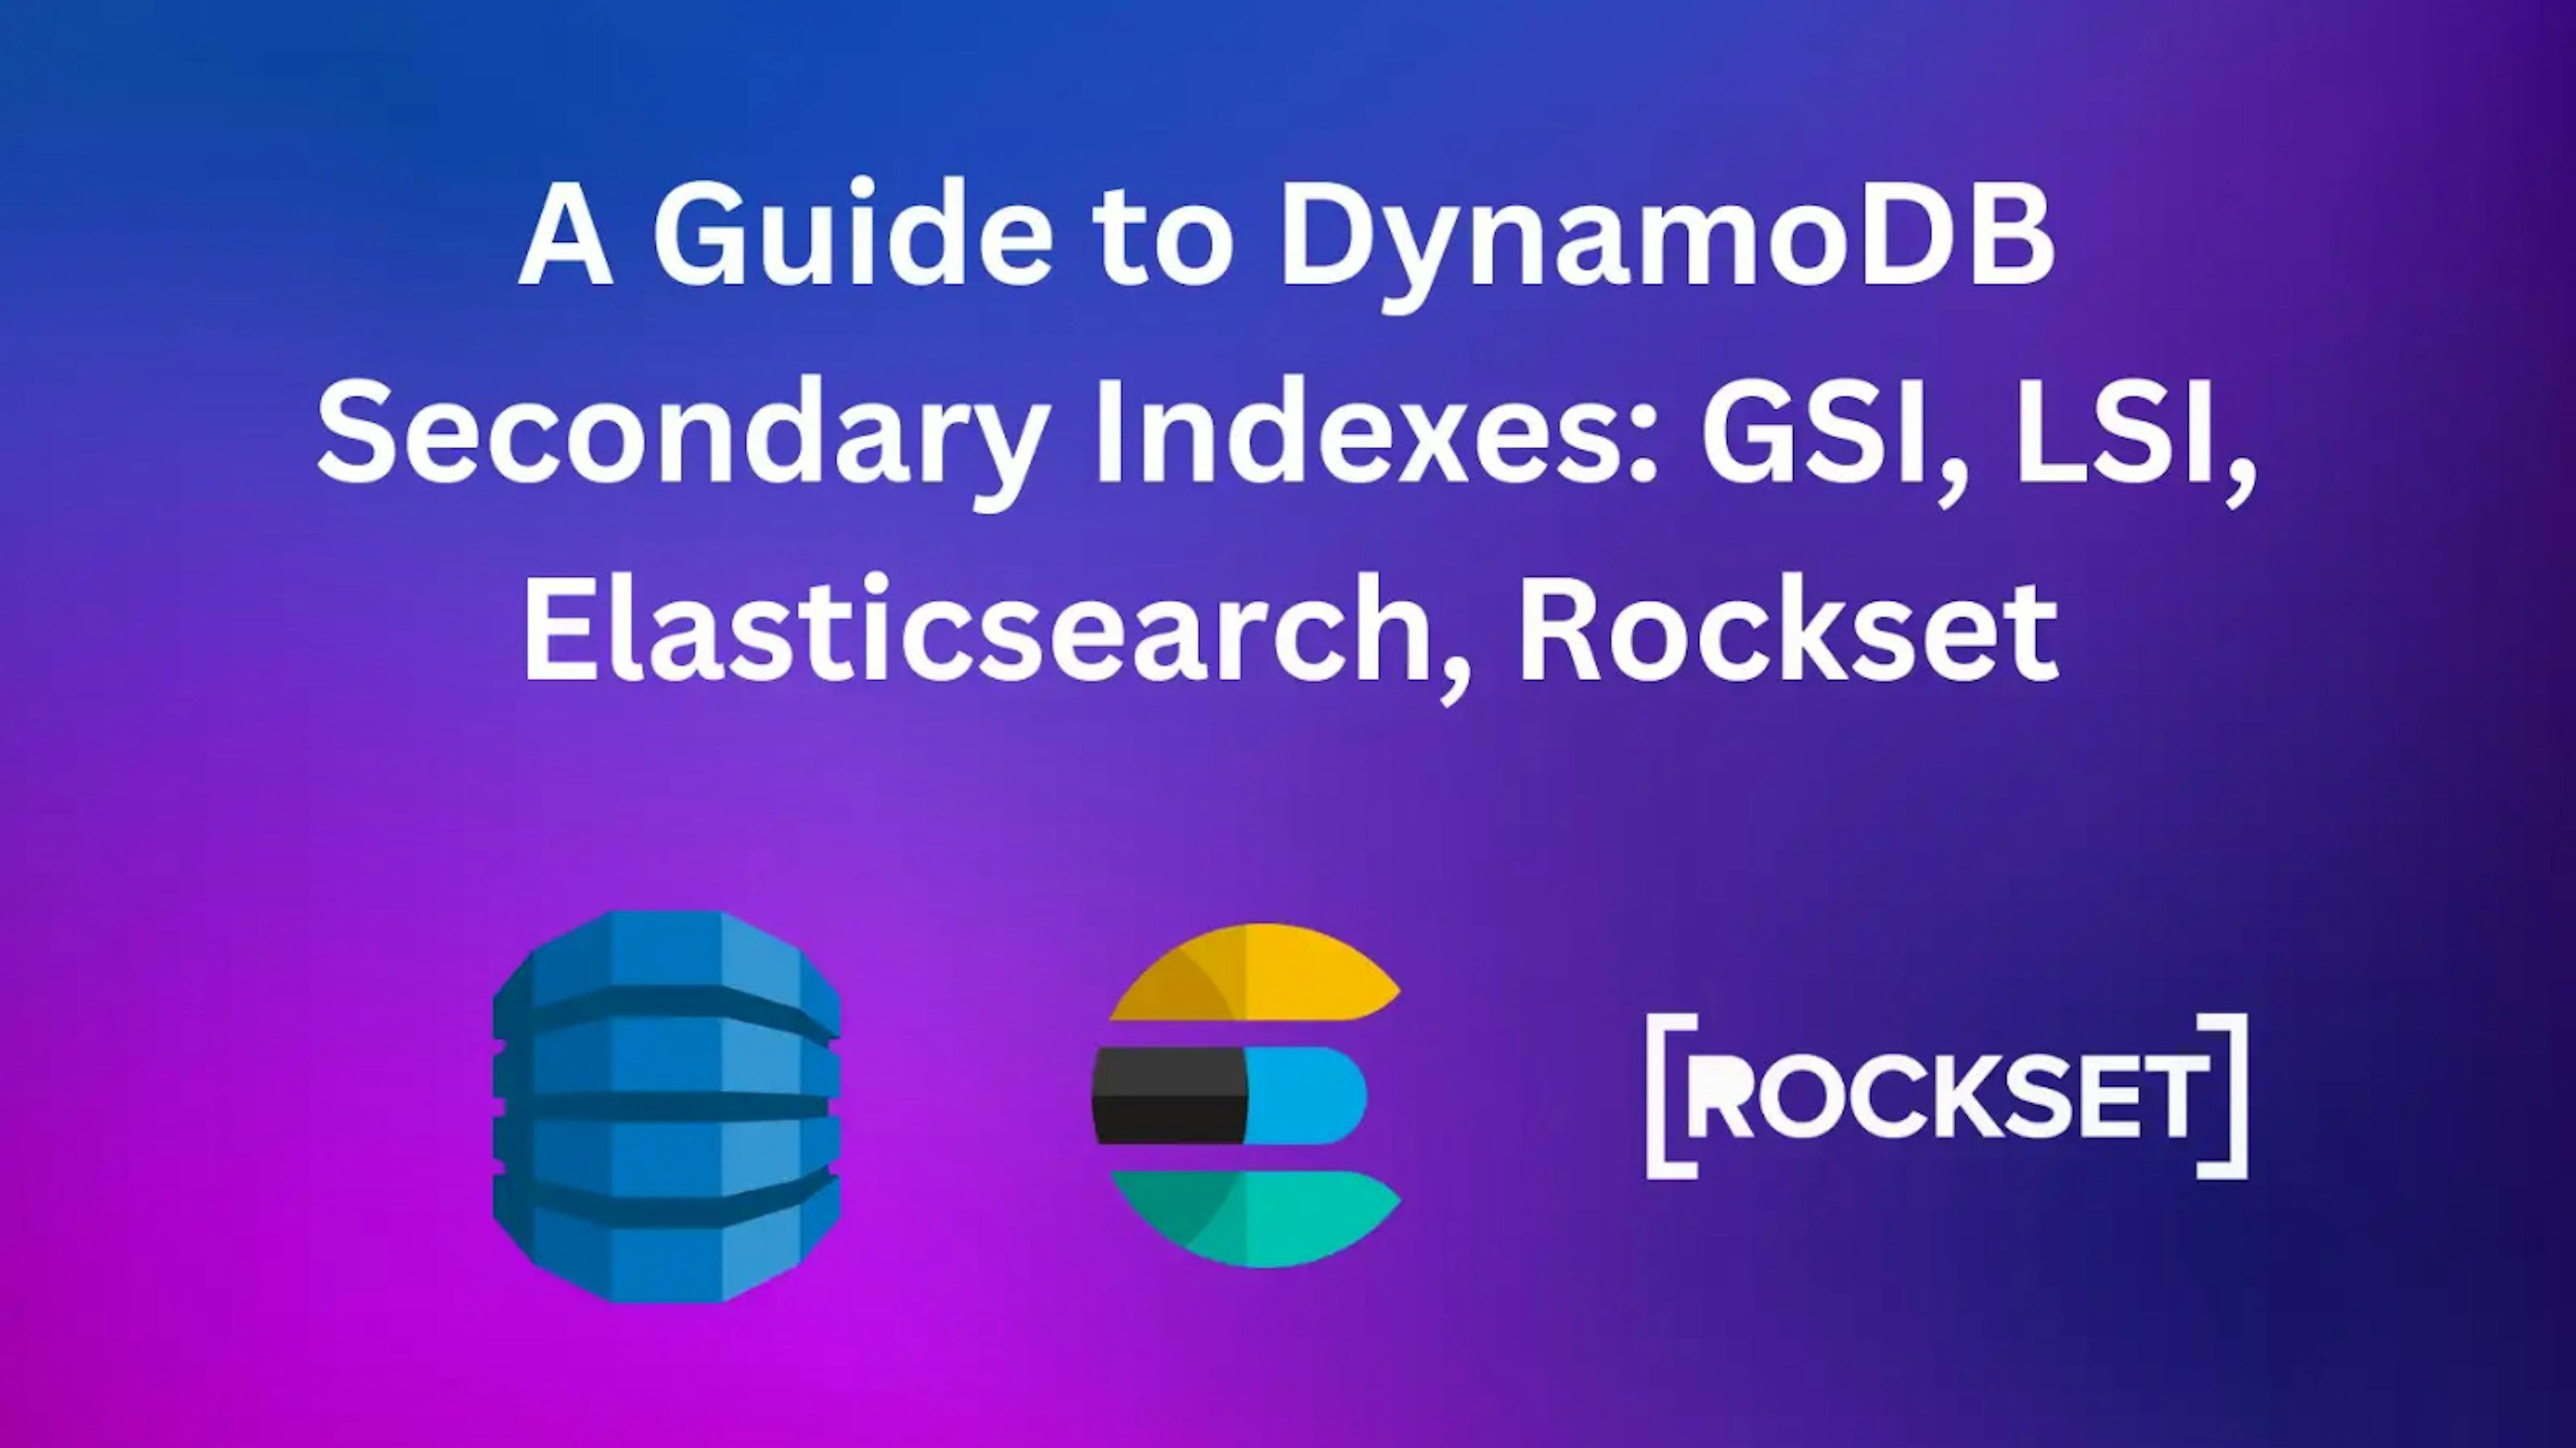 featured image - Rockset xếp chồng lên nhau như thế nào so với Elaticsearch trong các chỉ mục phụ của DynamoDB